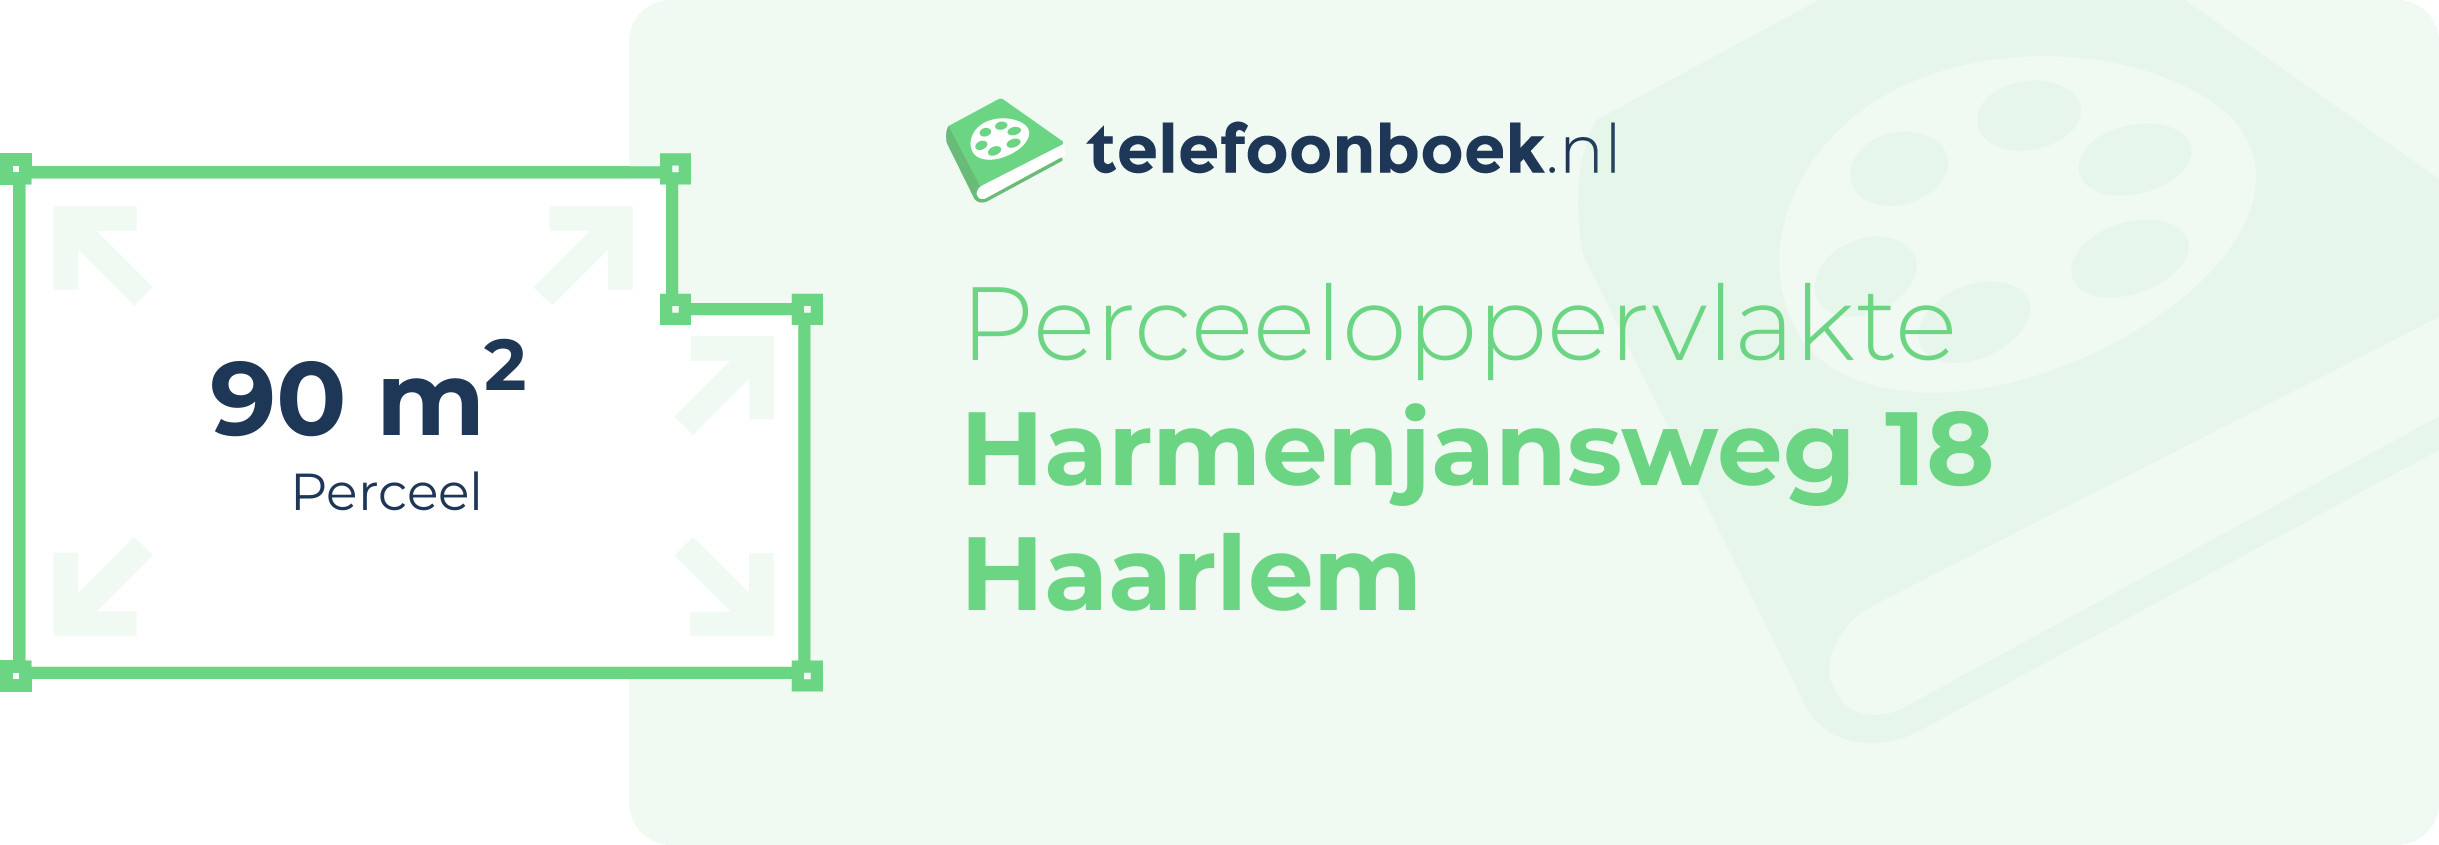 Perceeloppervlakte Harmenjansweg 18 Haarlem